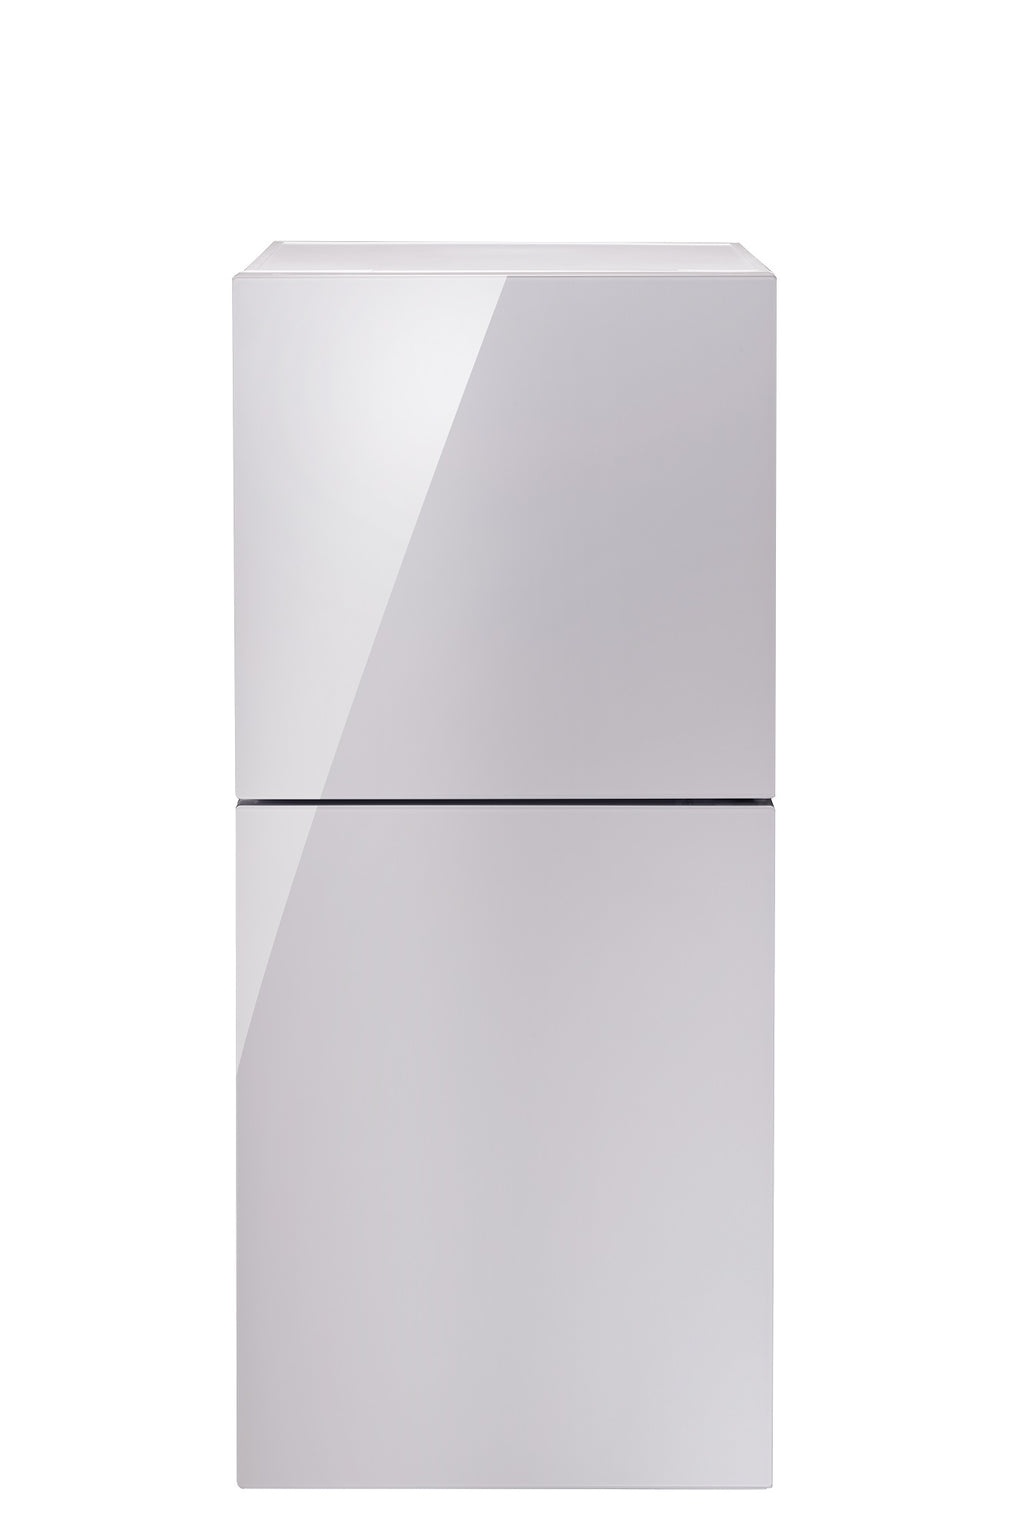 2ドア冷凍冷蔵庫 ハーフ&ハーフ – ツインバード公式ストア